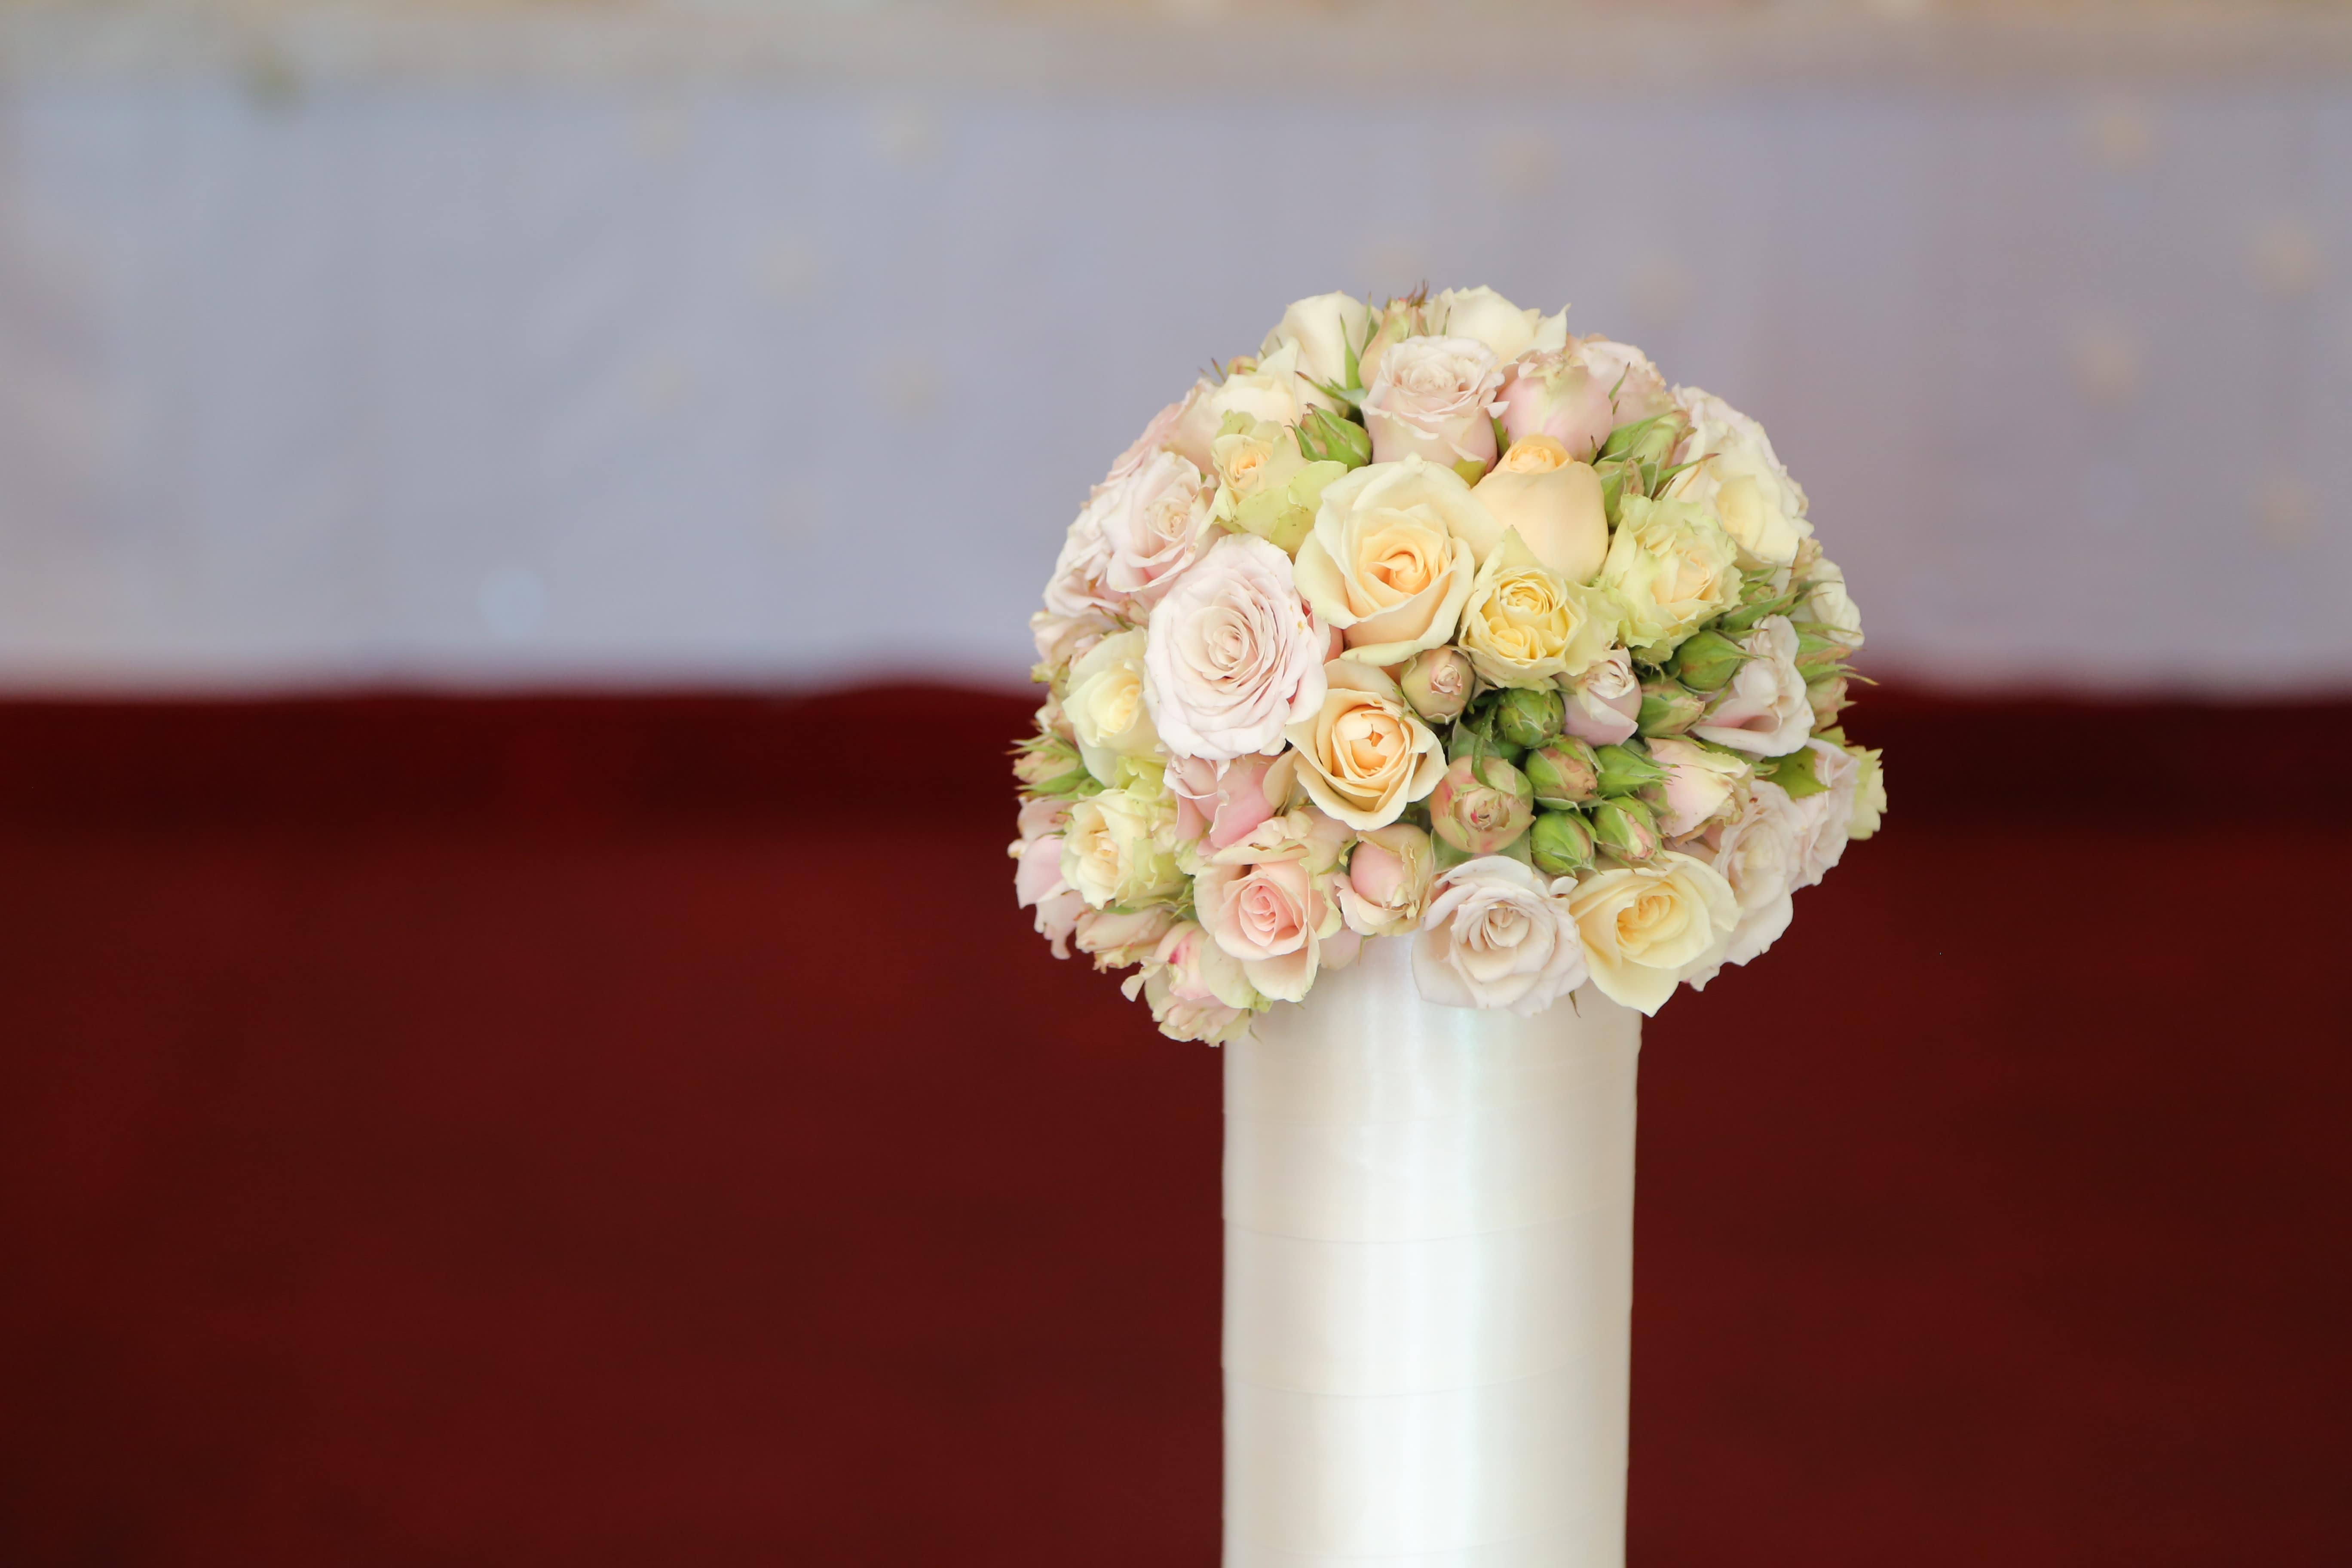 フリー写真画像 ウェディングブーケ 花瓶 磁器 結婚式 セラミック バラ エレガンス 配置 装飾 花